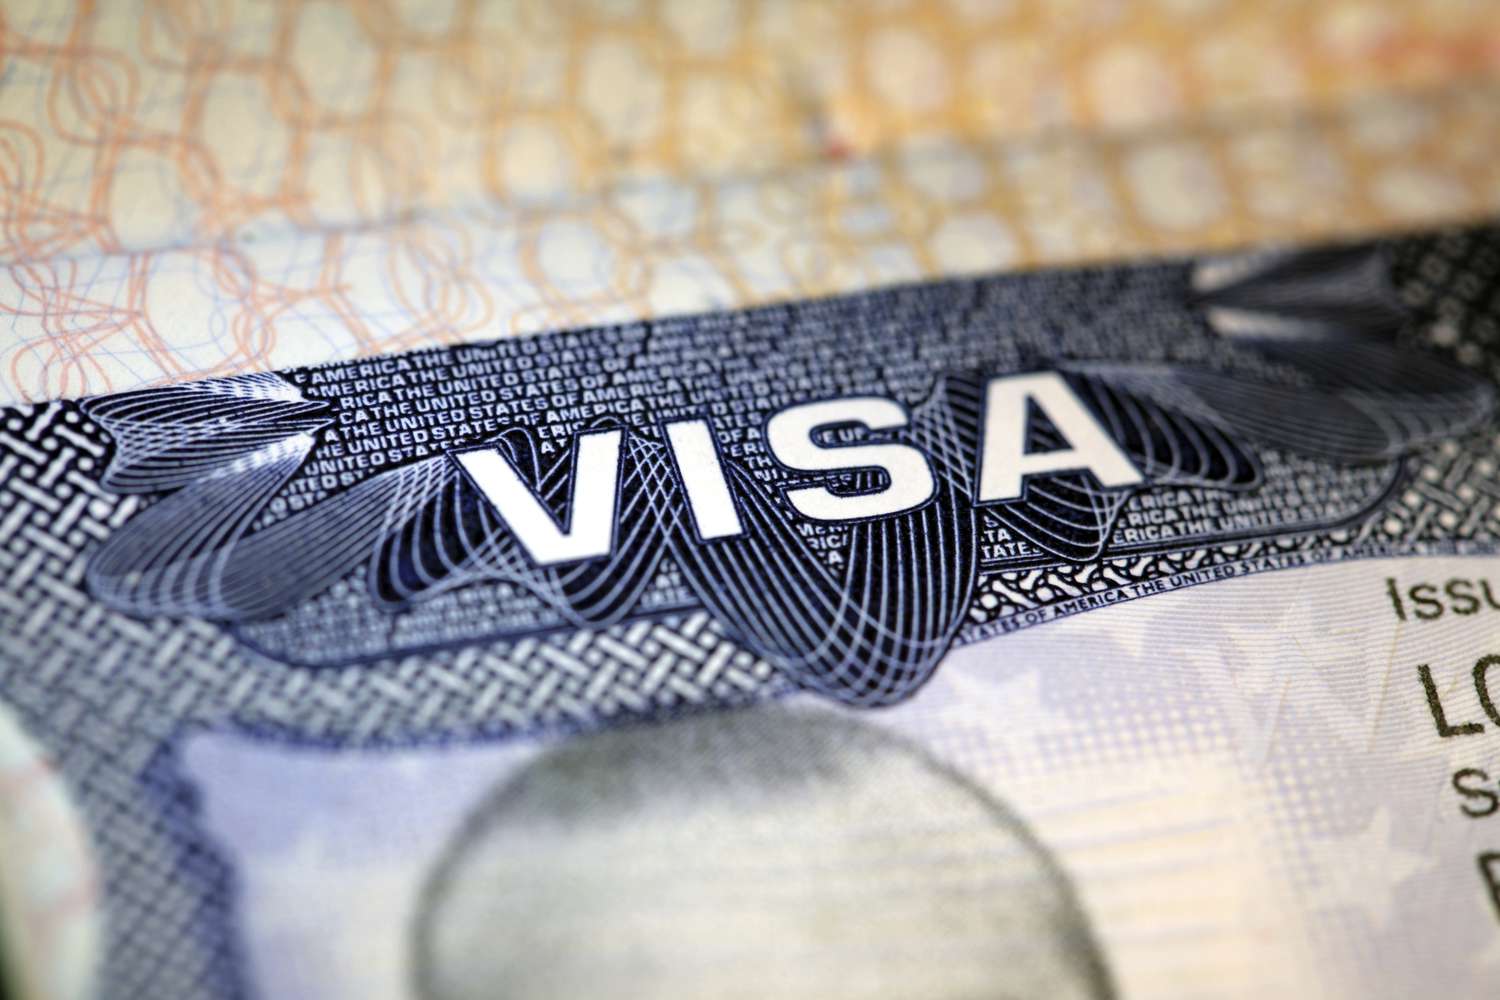 EEUU | De esta manera tendrás más posibilidades de obtener la visa (+Estrategia)